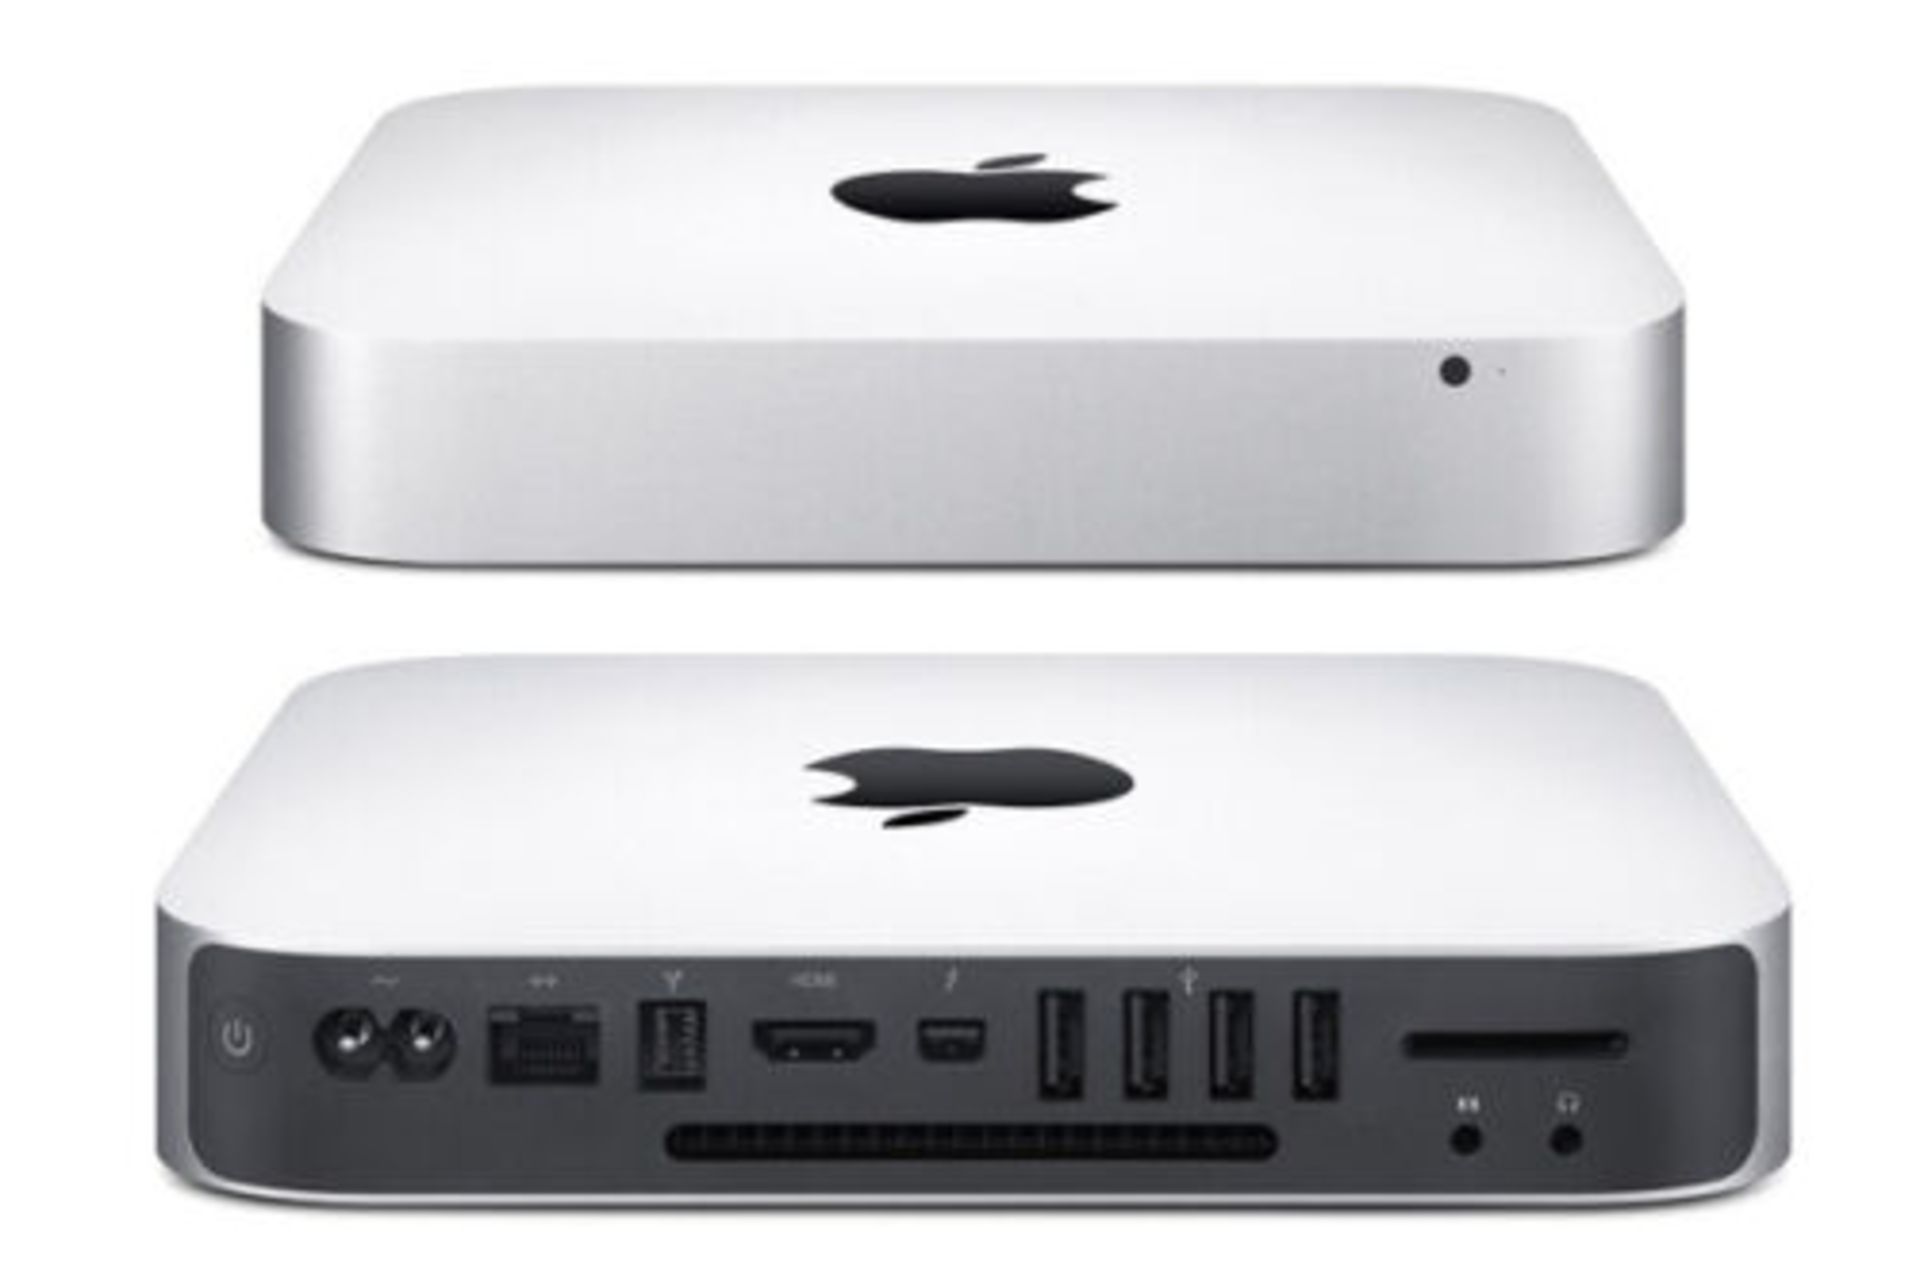 Apple Mac Mini OS X Catalina Intel Core i7-3615QM 10GB Memory 1TB HD Bluetooth Office